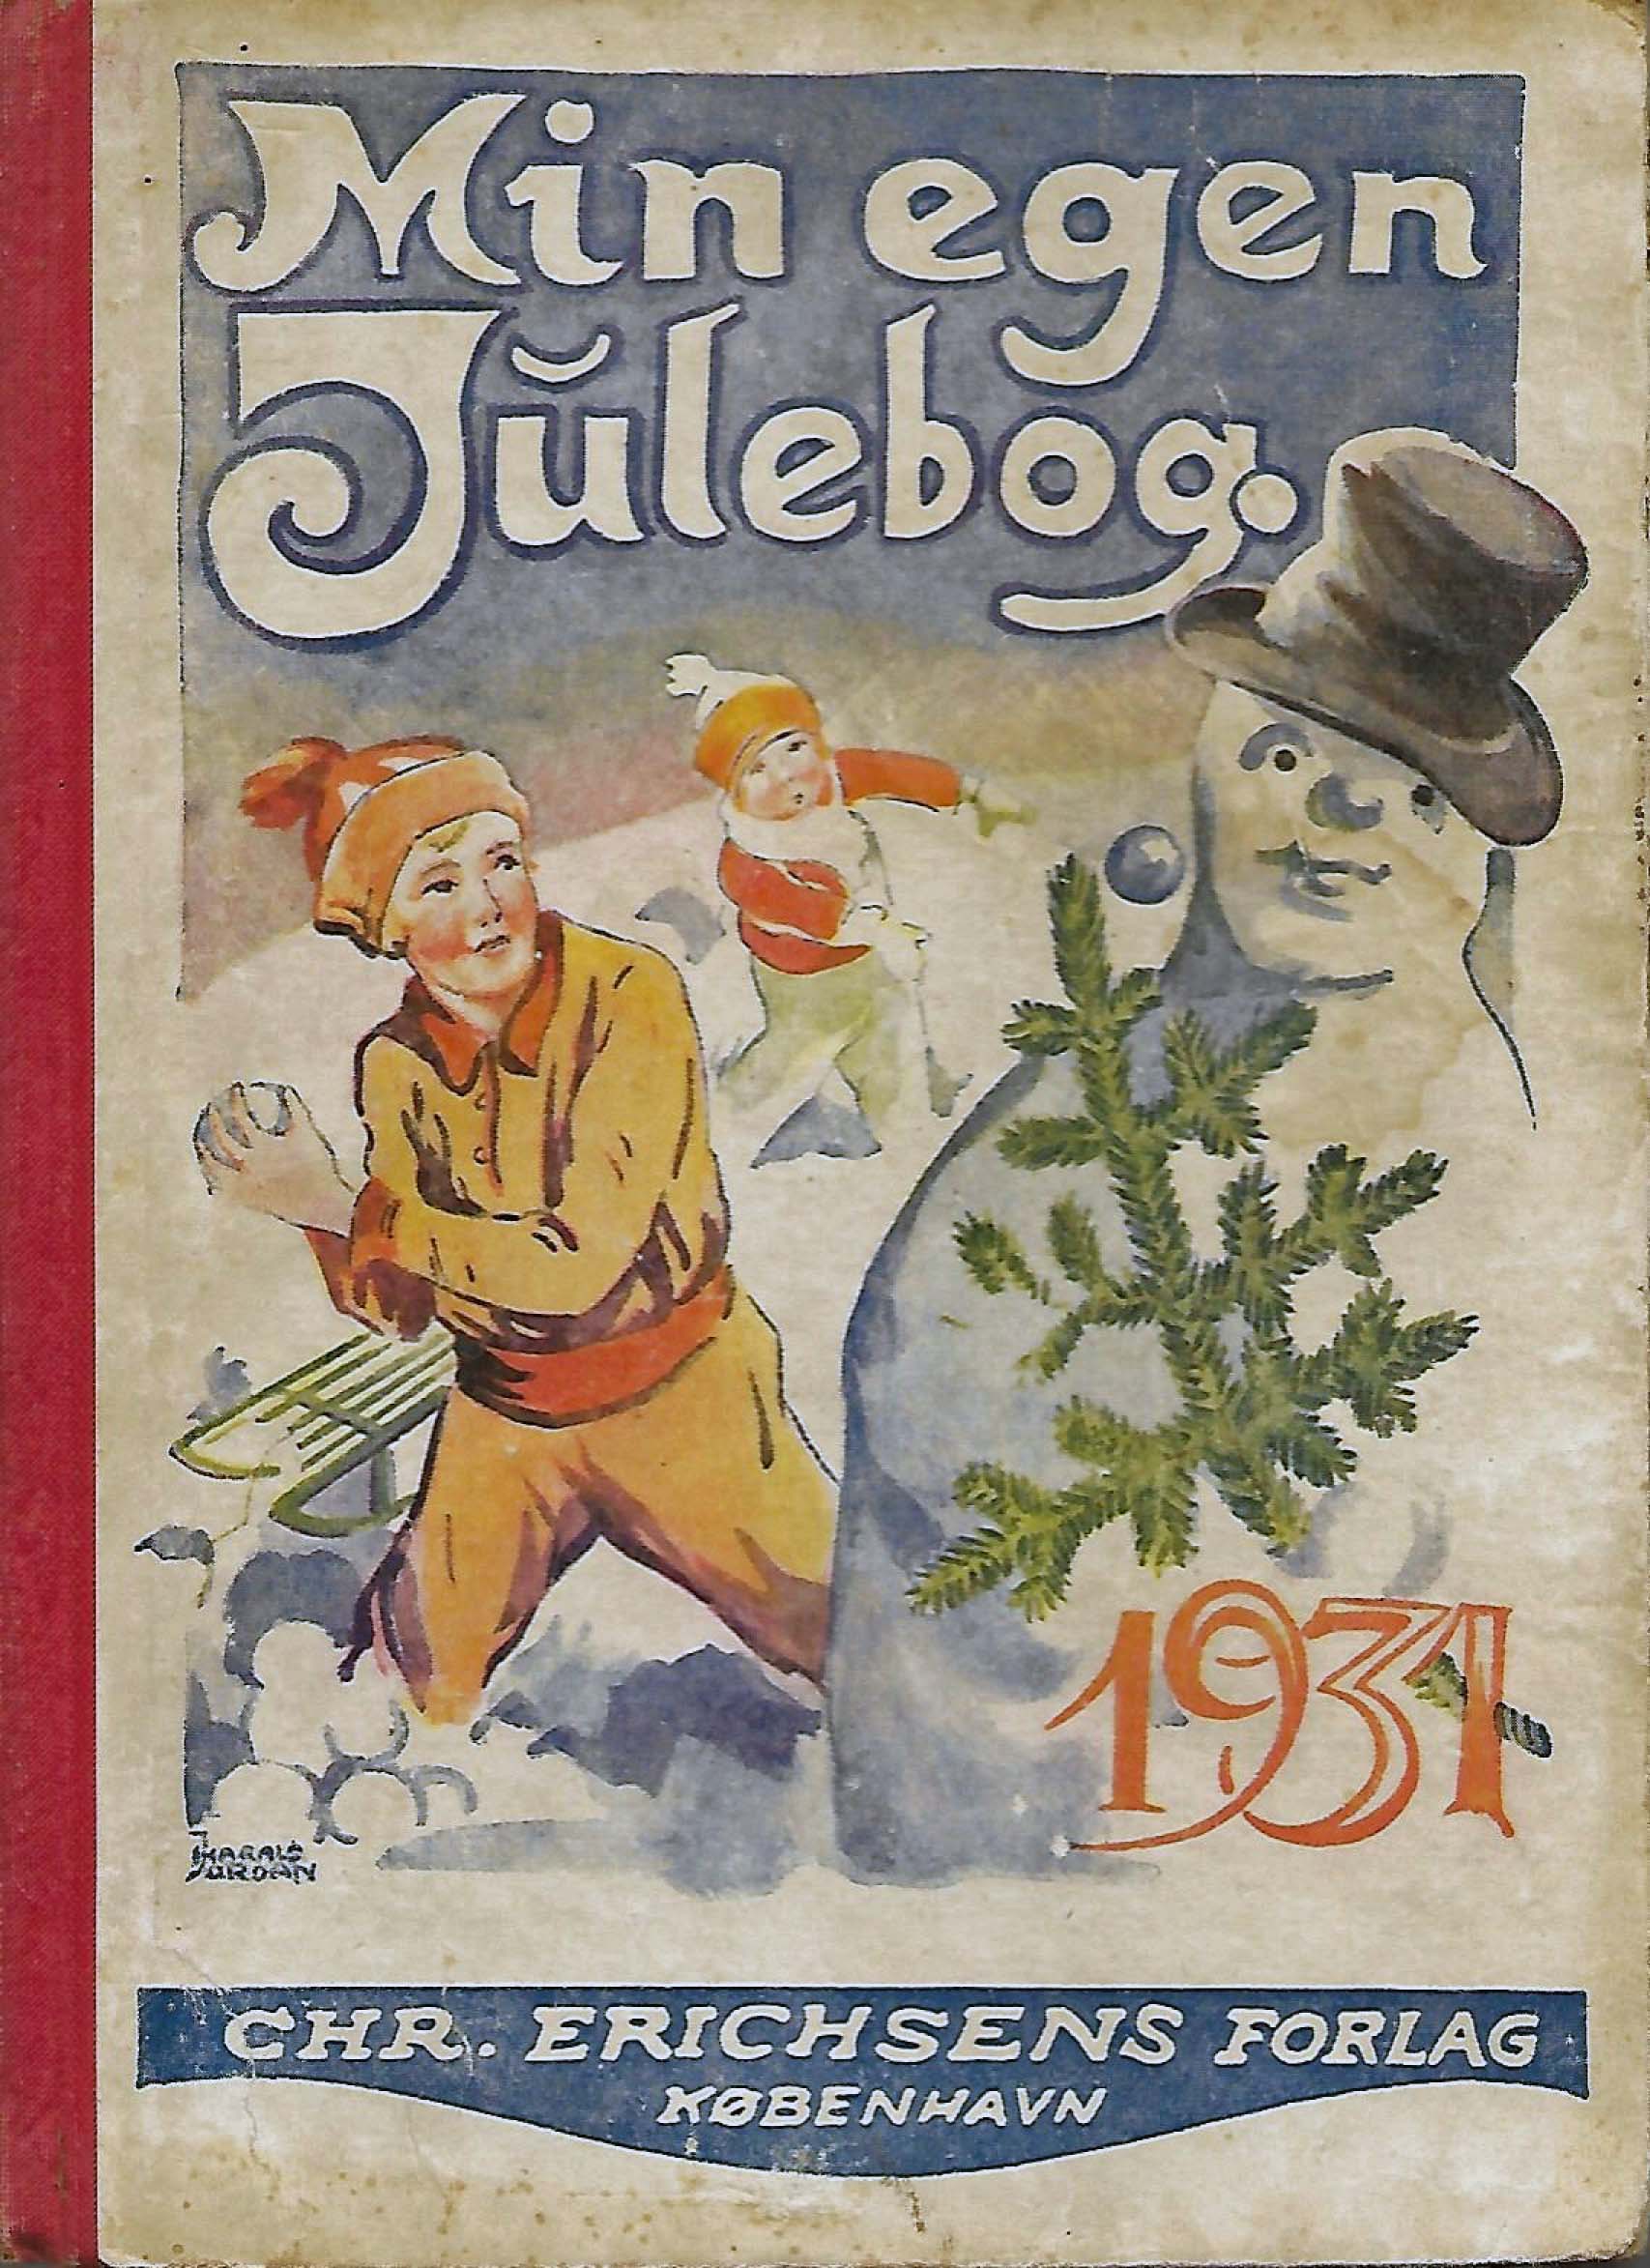 1931 MIn egen Julebog